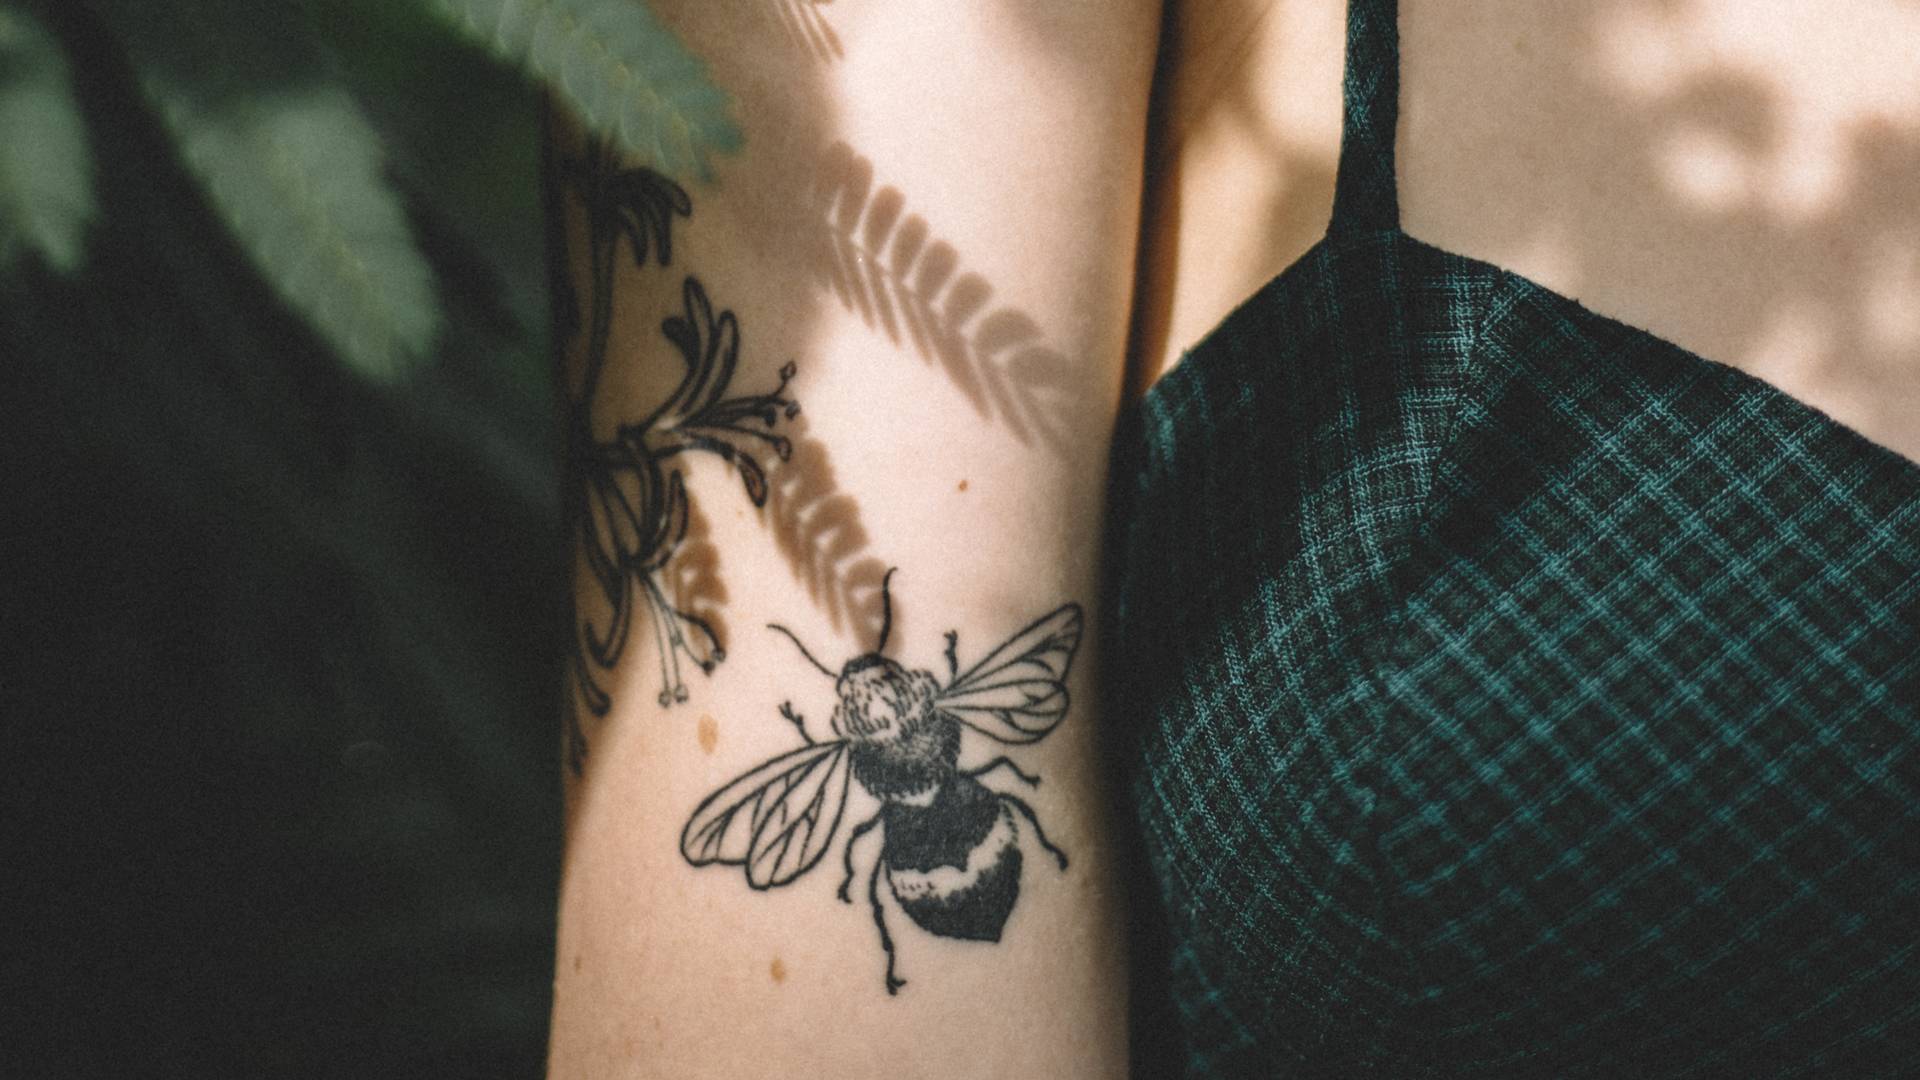 Ten modny tatuaż ma ukryte znaczenia. Warto je poznać zanim skopiujemy wzór z Pinteresta